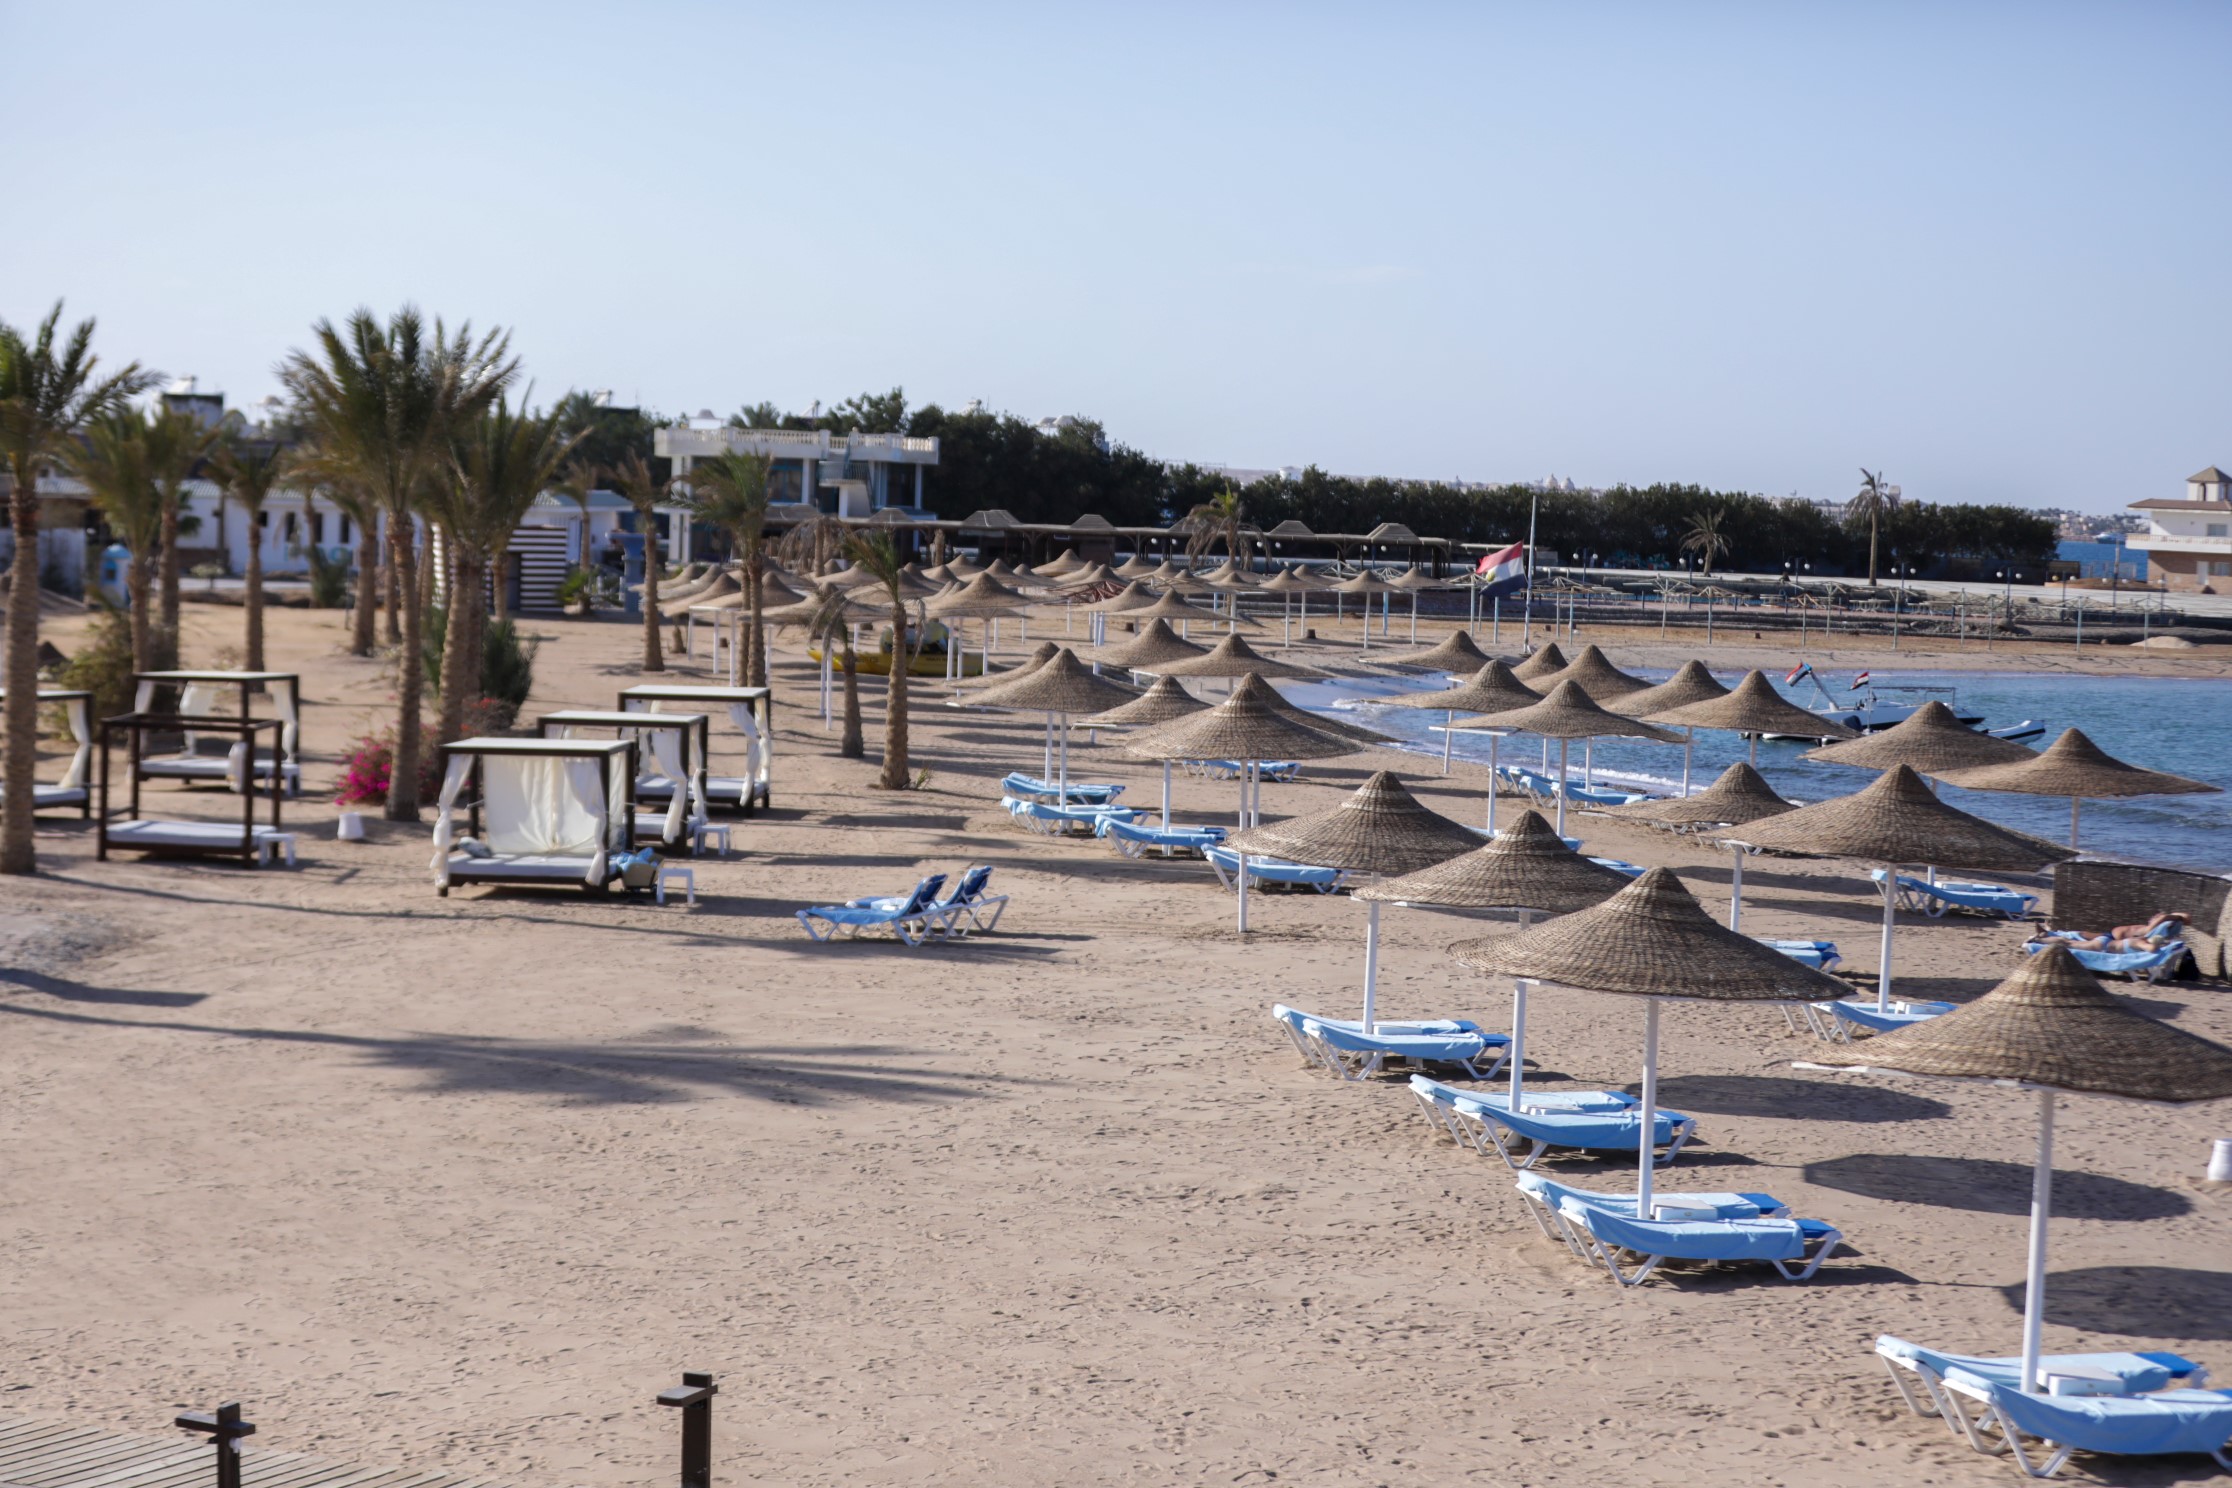 Отель Calimera Египет. Calimera Blend Paradise. Calimera Blend Paradise Resort. Calimera Blend Paradise Resort Hurghada 5 Хургада.